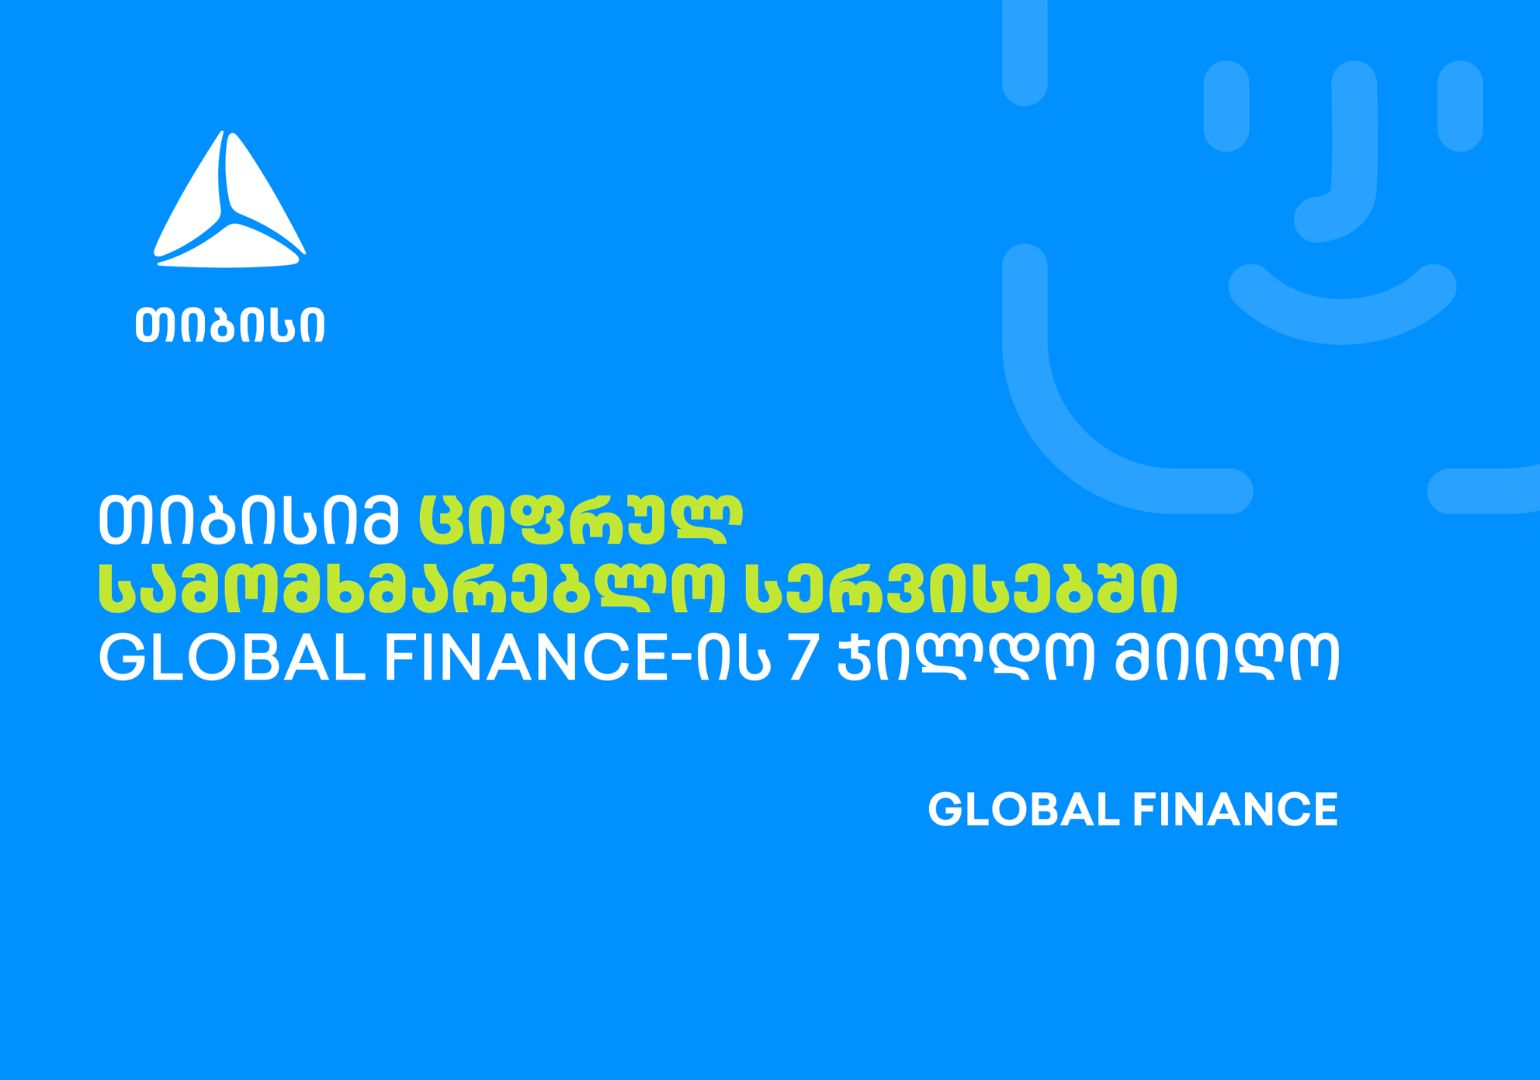 თიბისიმ ციფრულ სამომხმარებლო სერვისებში Global Finance-ის 7 ჯილდო მიიღო